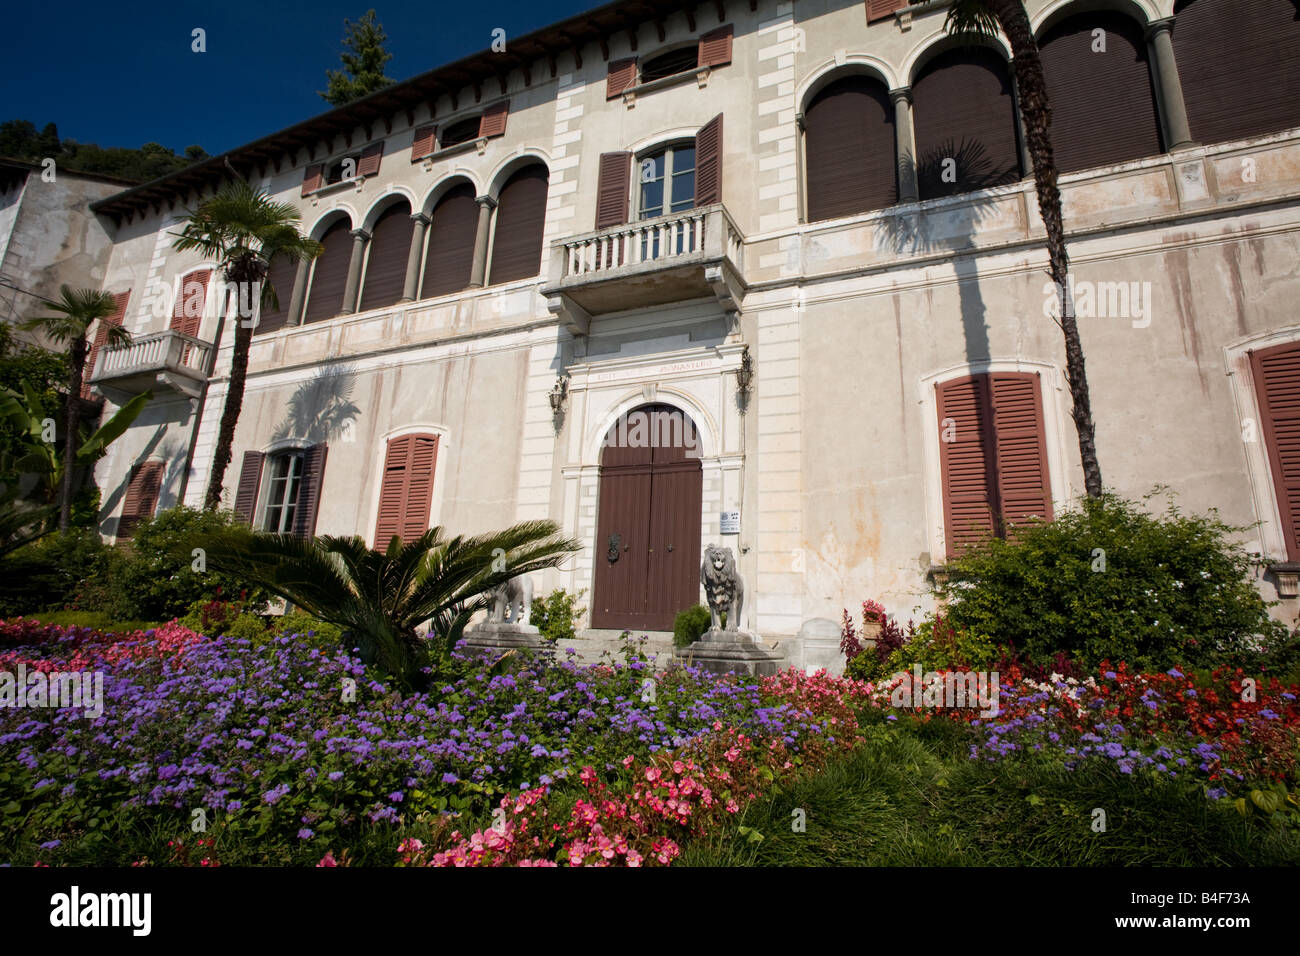 Villa Monastero facade, Varenna, Lecco, Italy Stock Photo